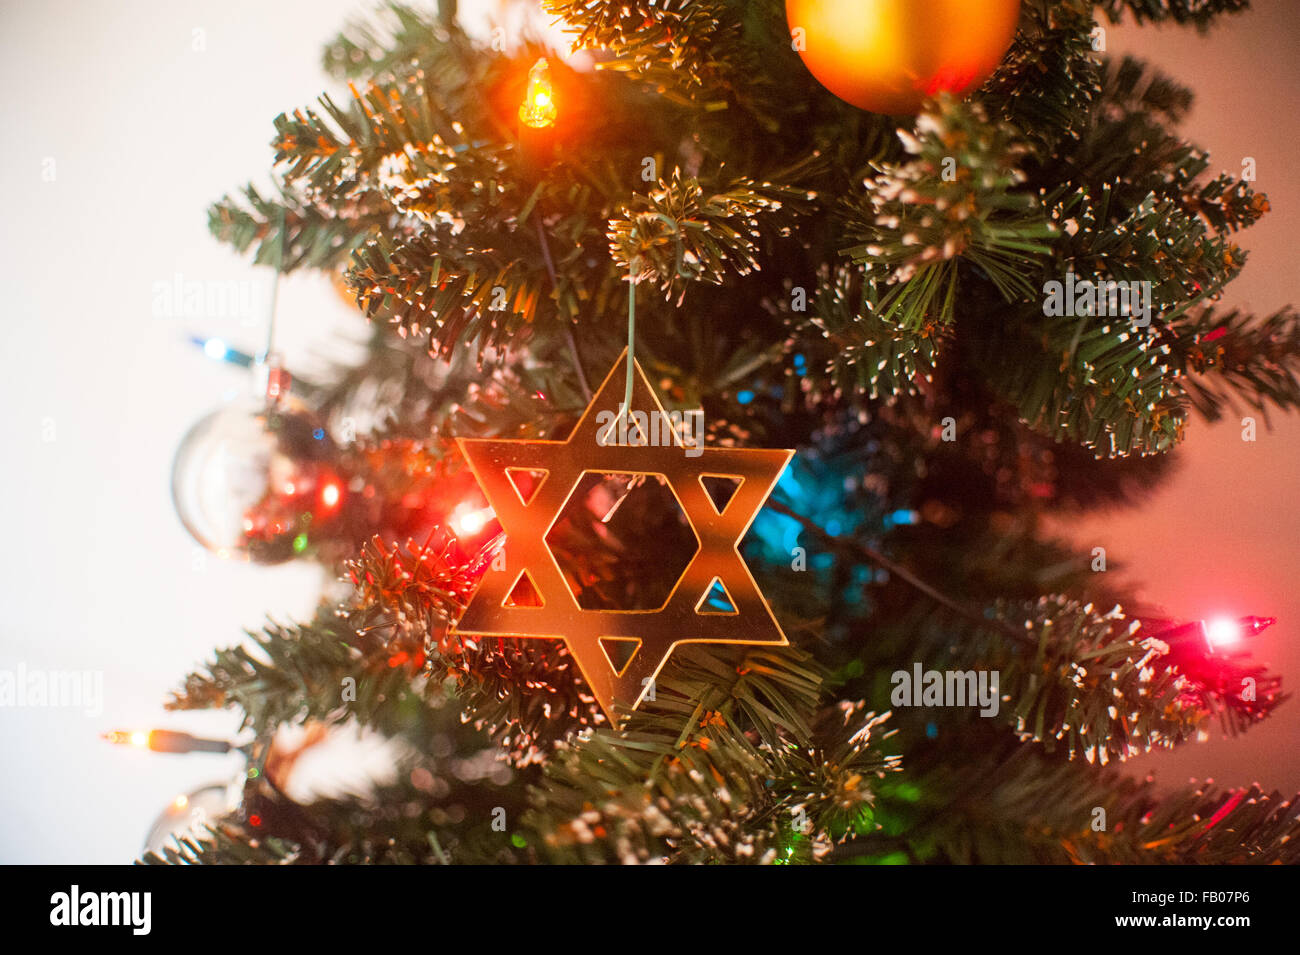 Jewish Star of David on Christmas tree. Stock Photo